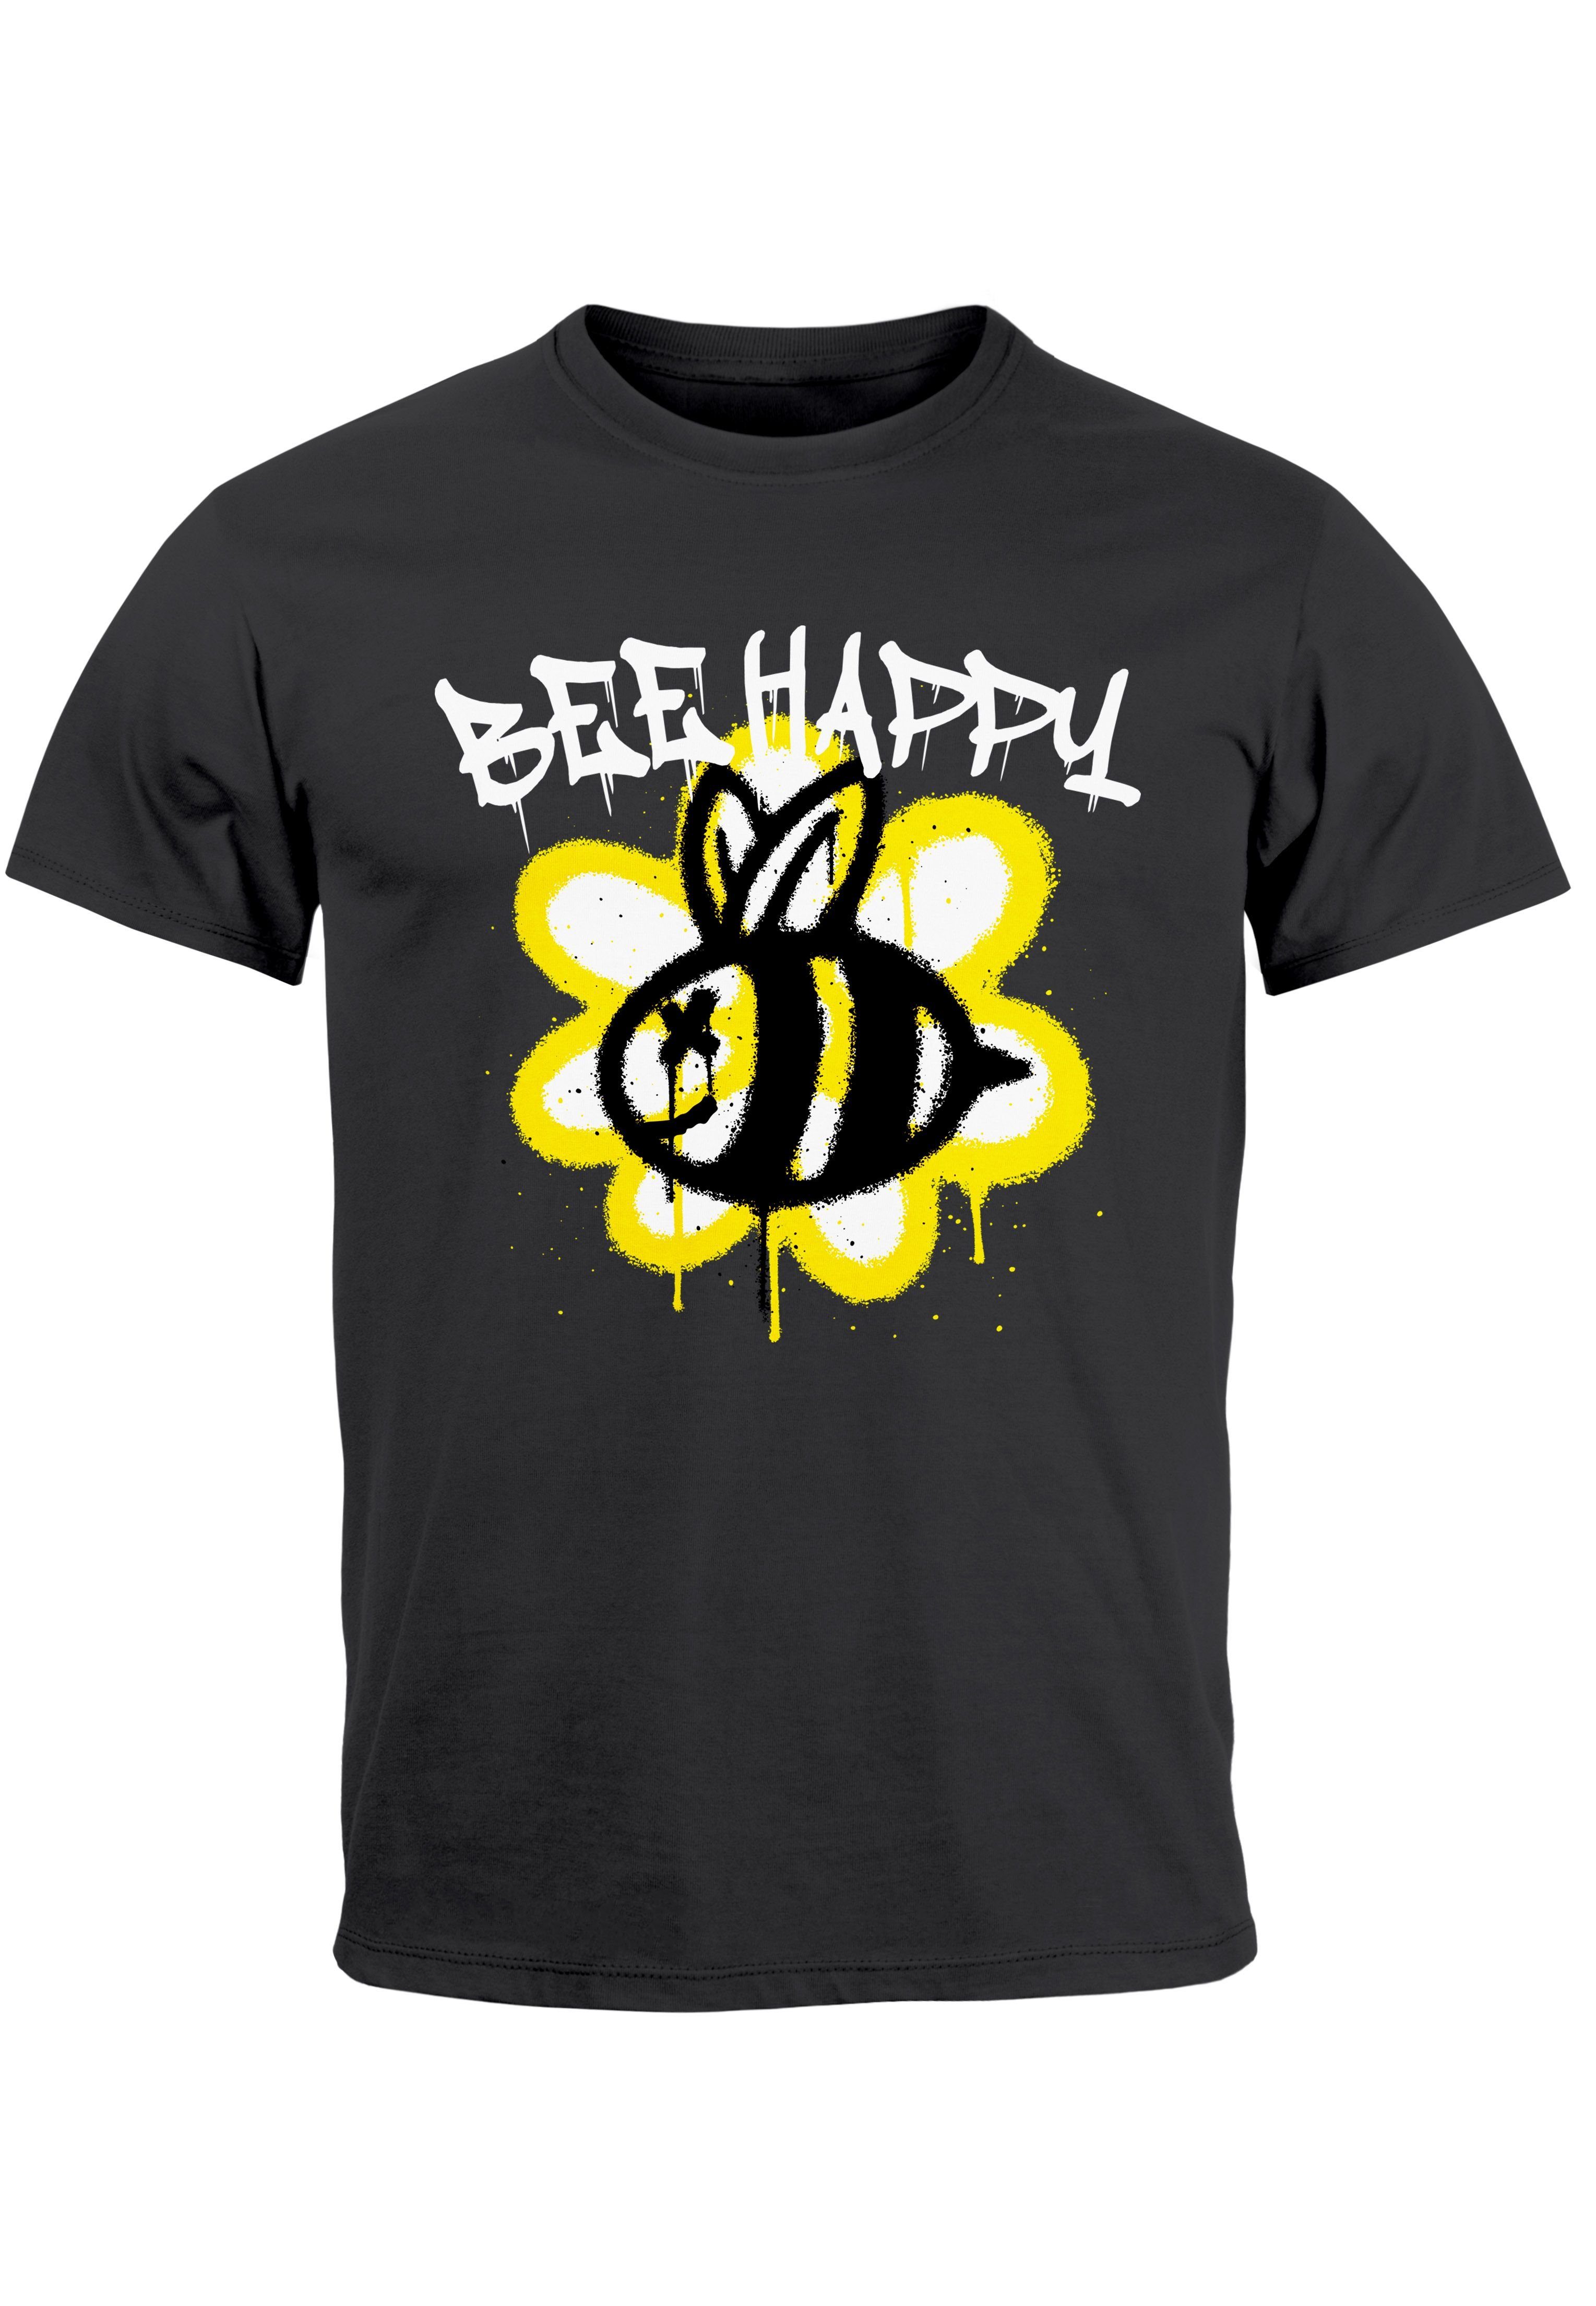 Neverless Print-Shirt Herren T-Shirt Aufdruck Bee Happy Biene Blume Graffiti SchriftzugFashi mit Print anthrazit